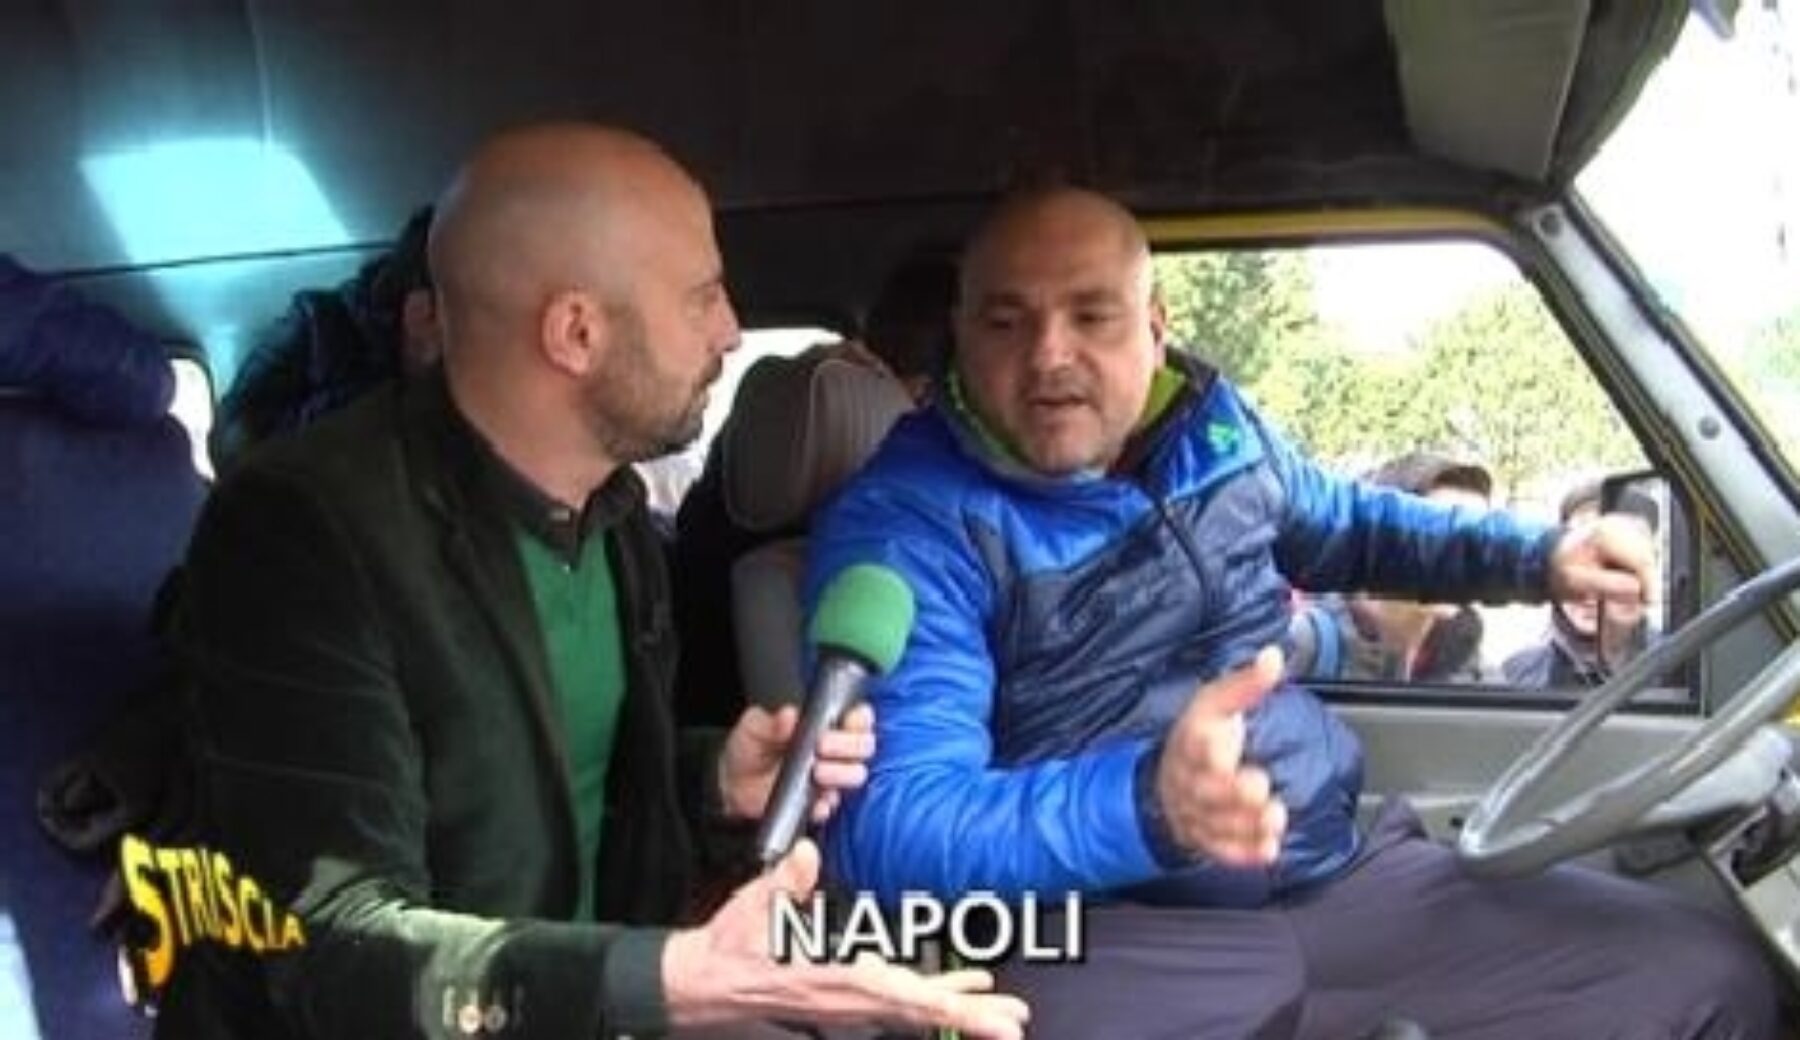 A Striscia la notizia scuolabus irregolare e senza assicurazione a Napoli